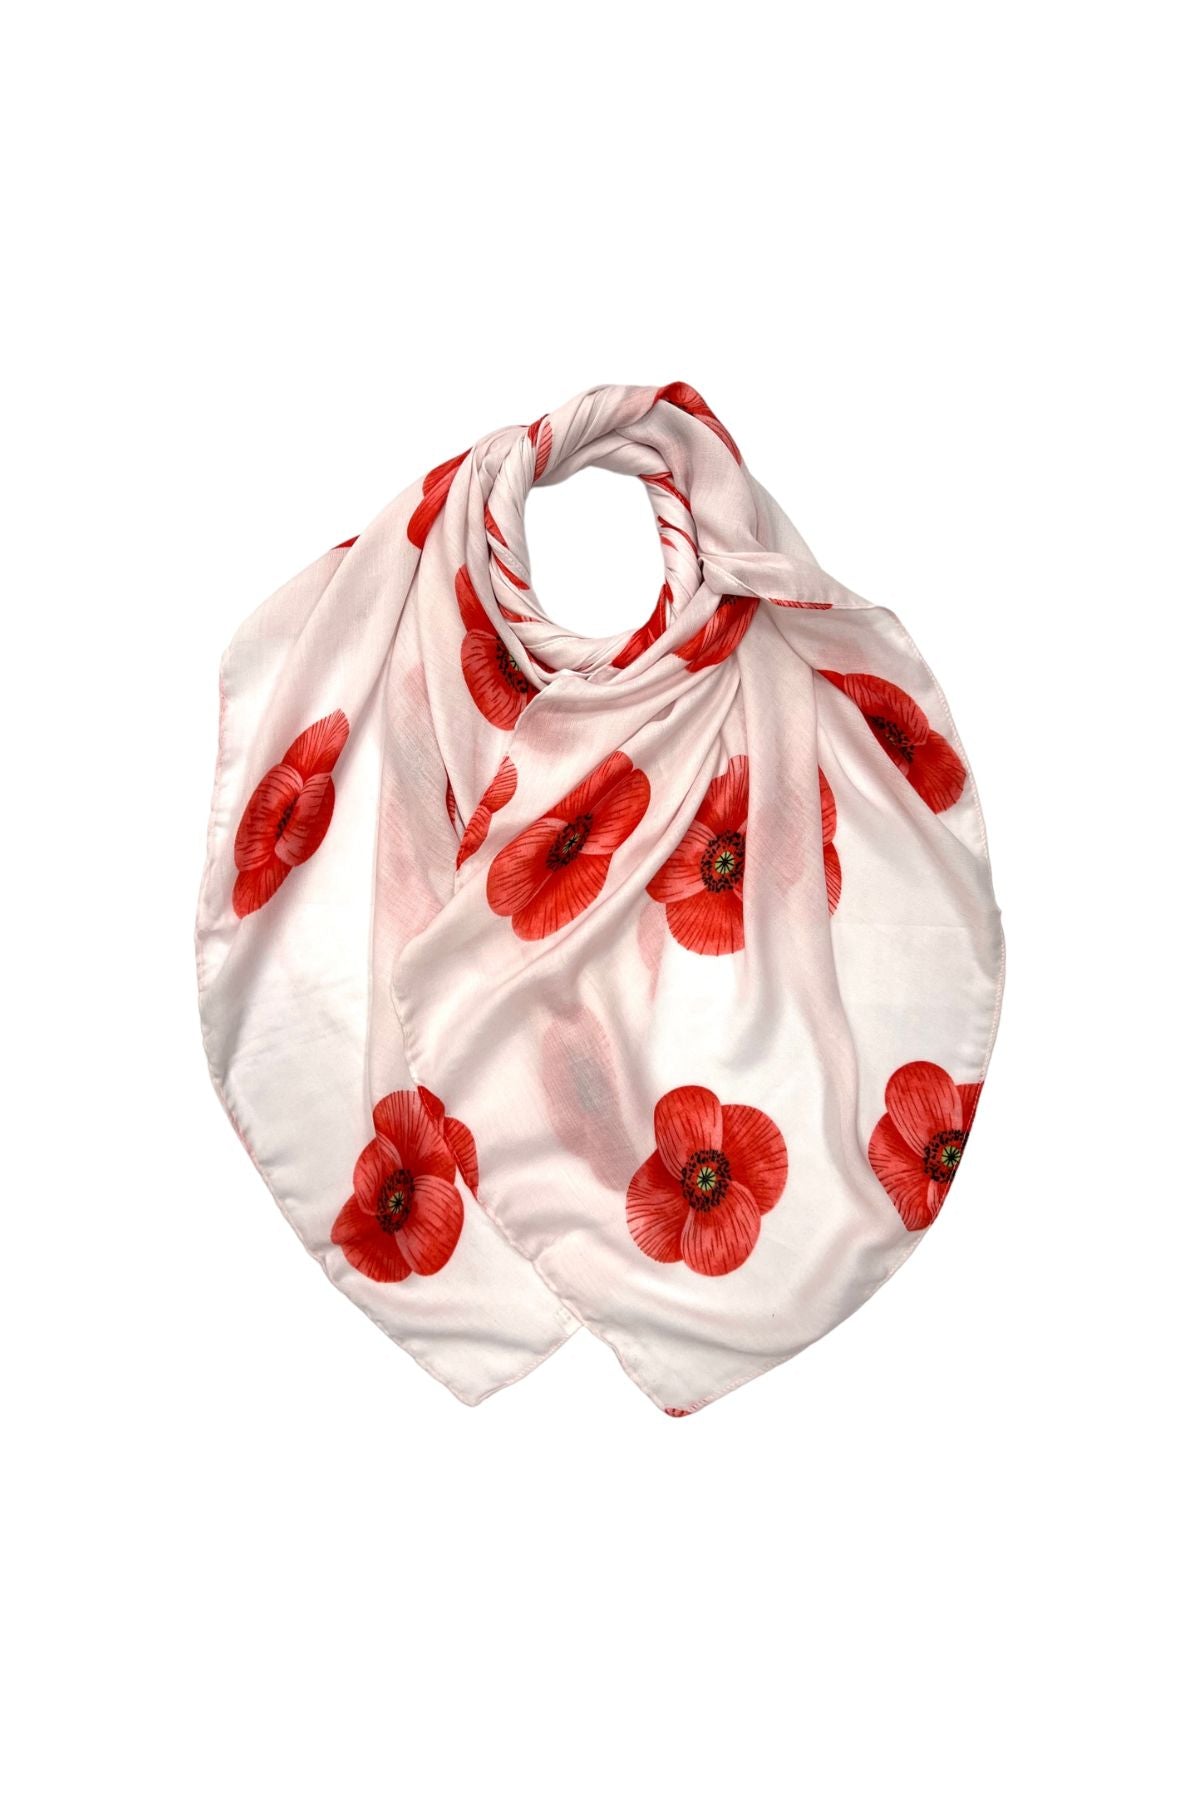 White poppy print scarf